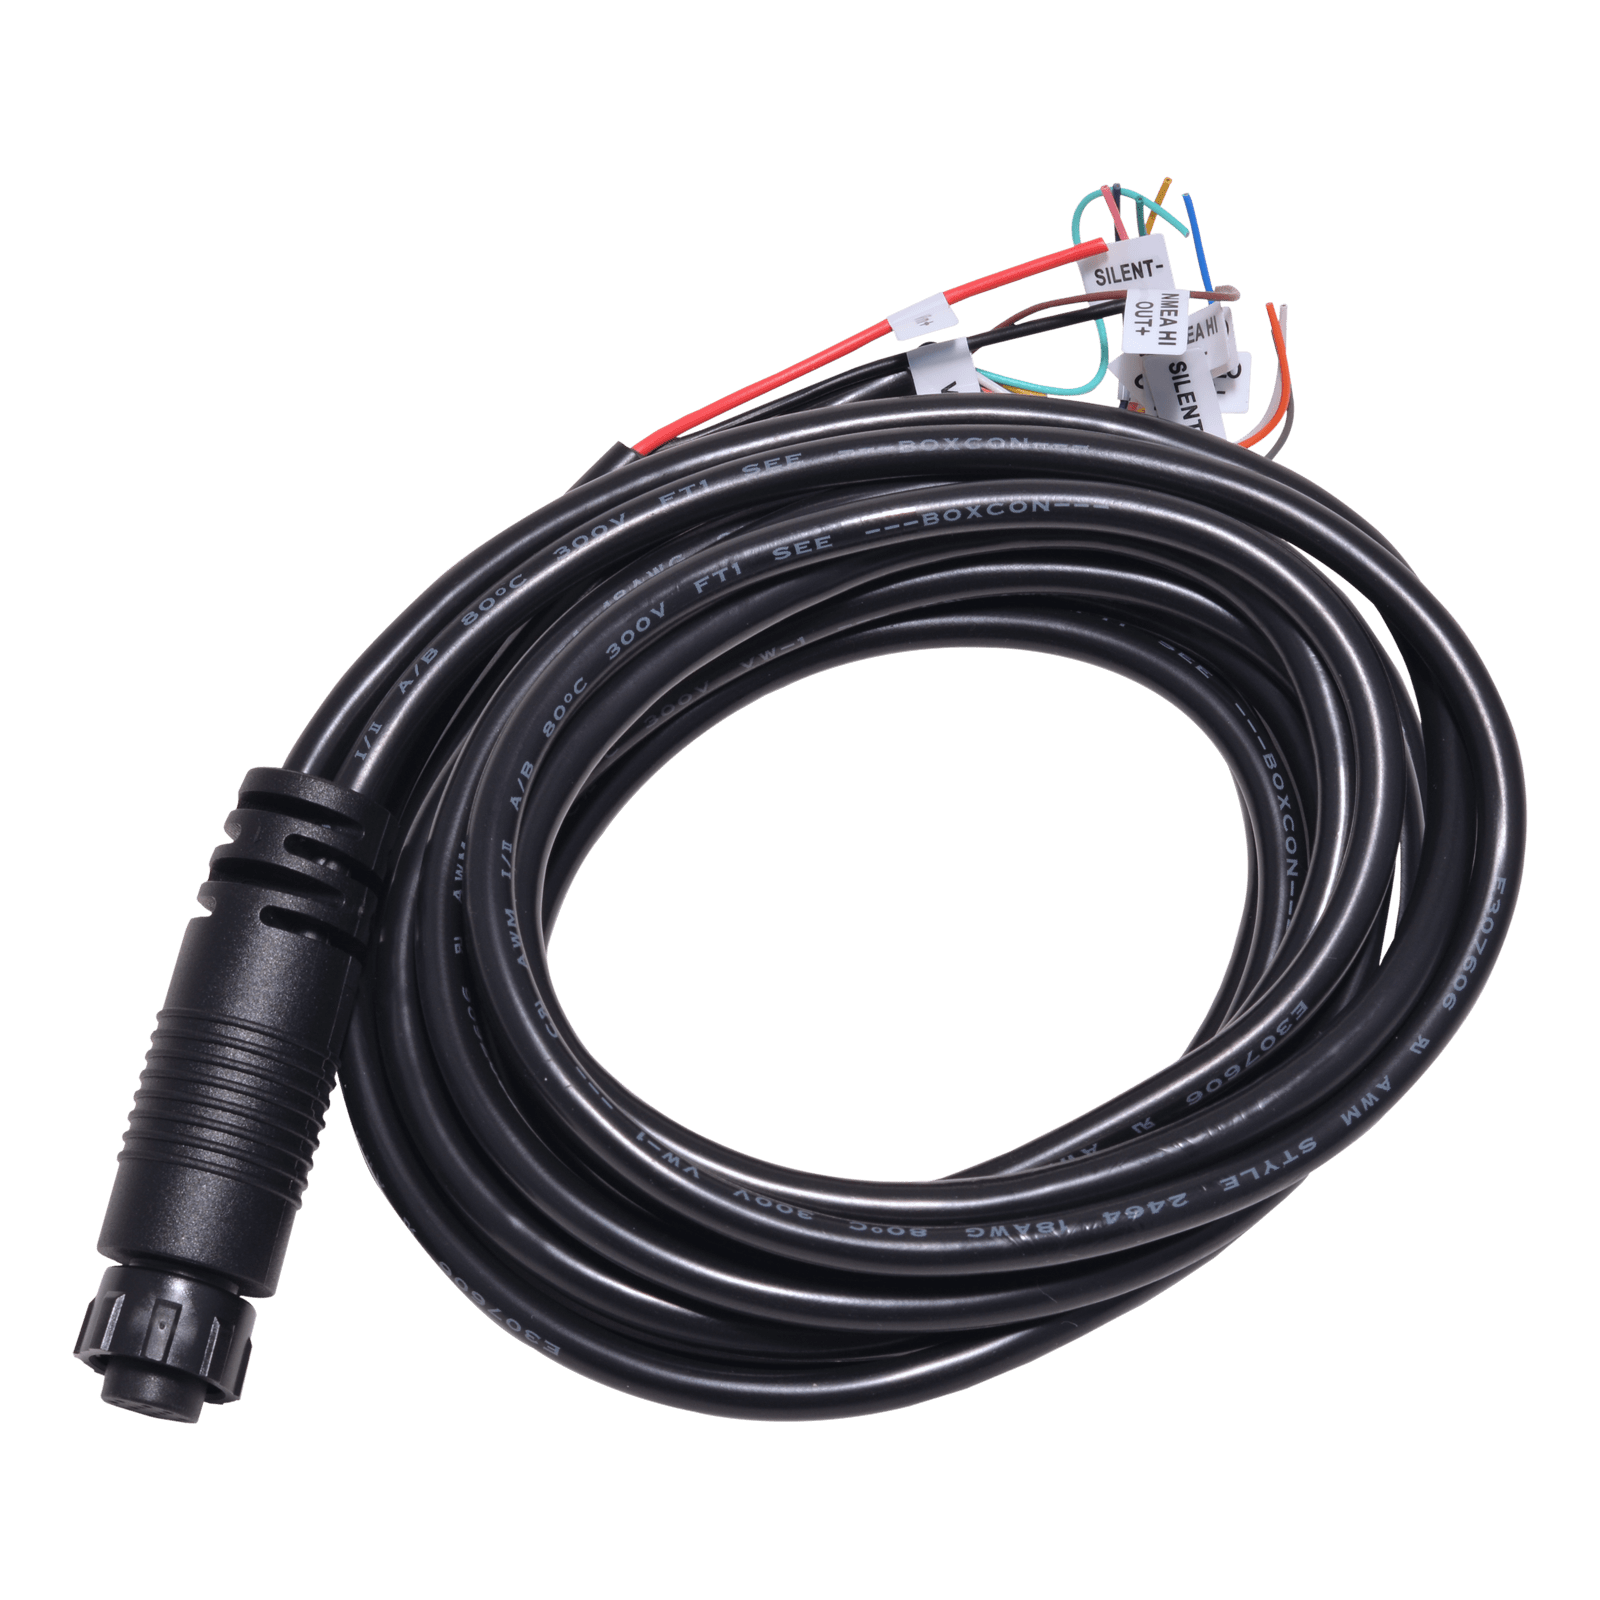  Em-trak - AIS power and data cable for B100, R100, B900